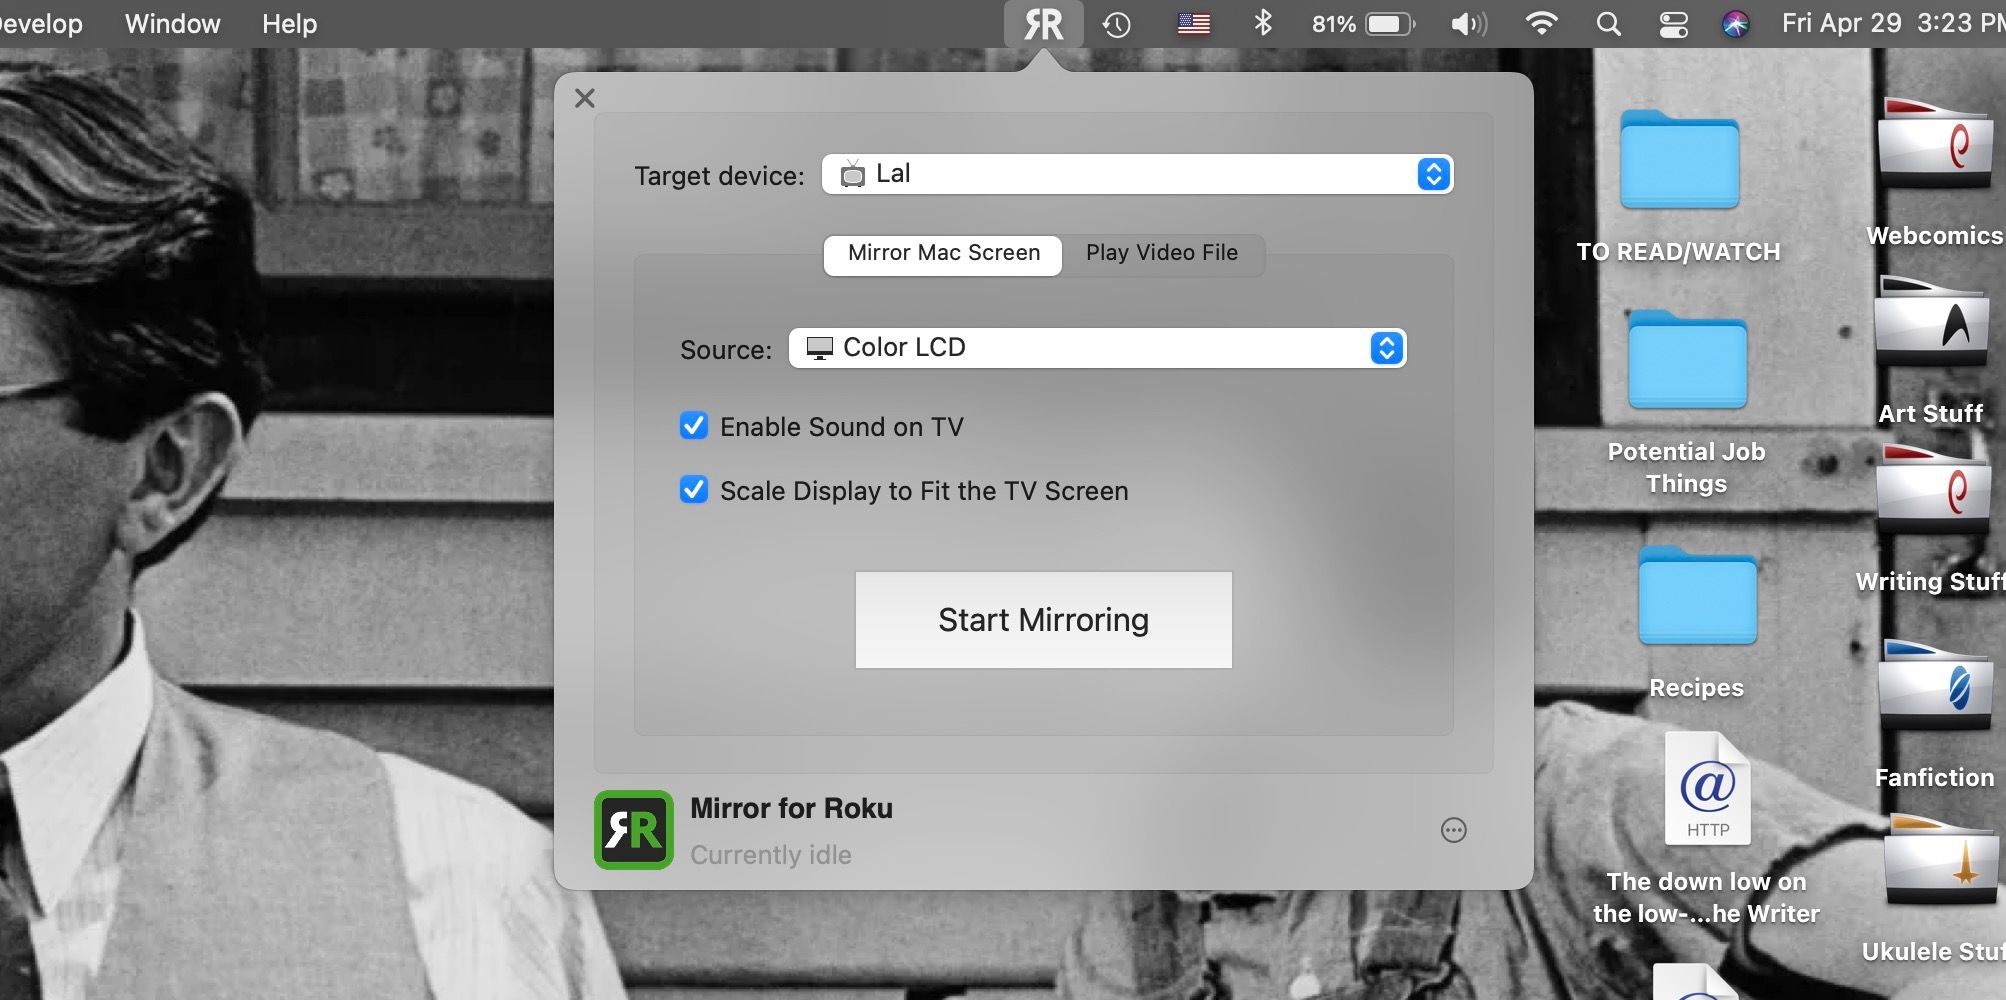 Mirror For Roku app open on MacBook